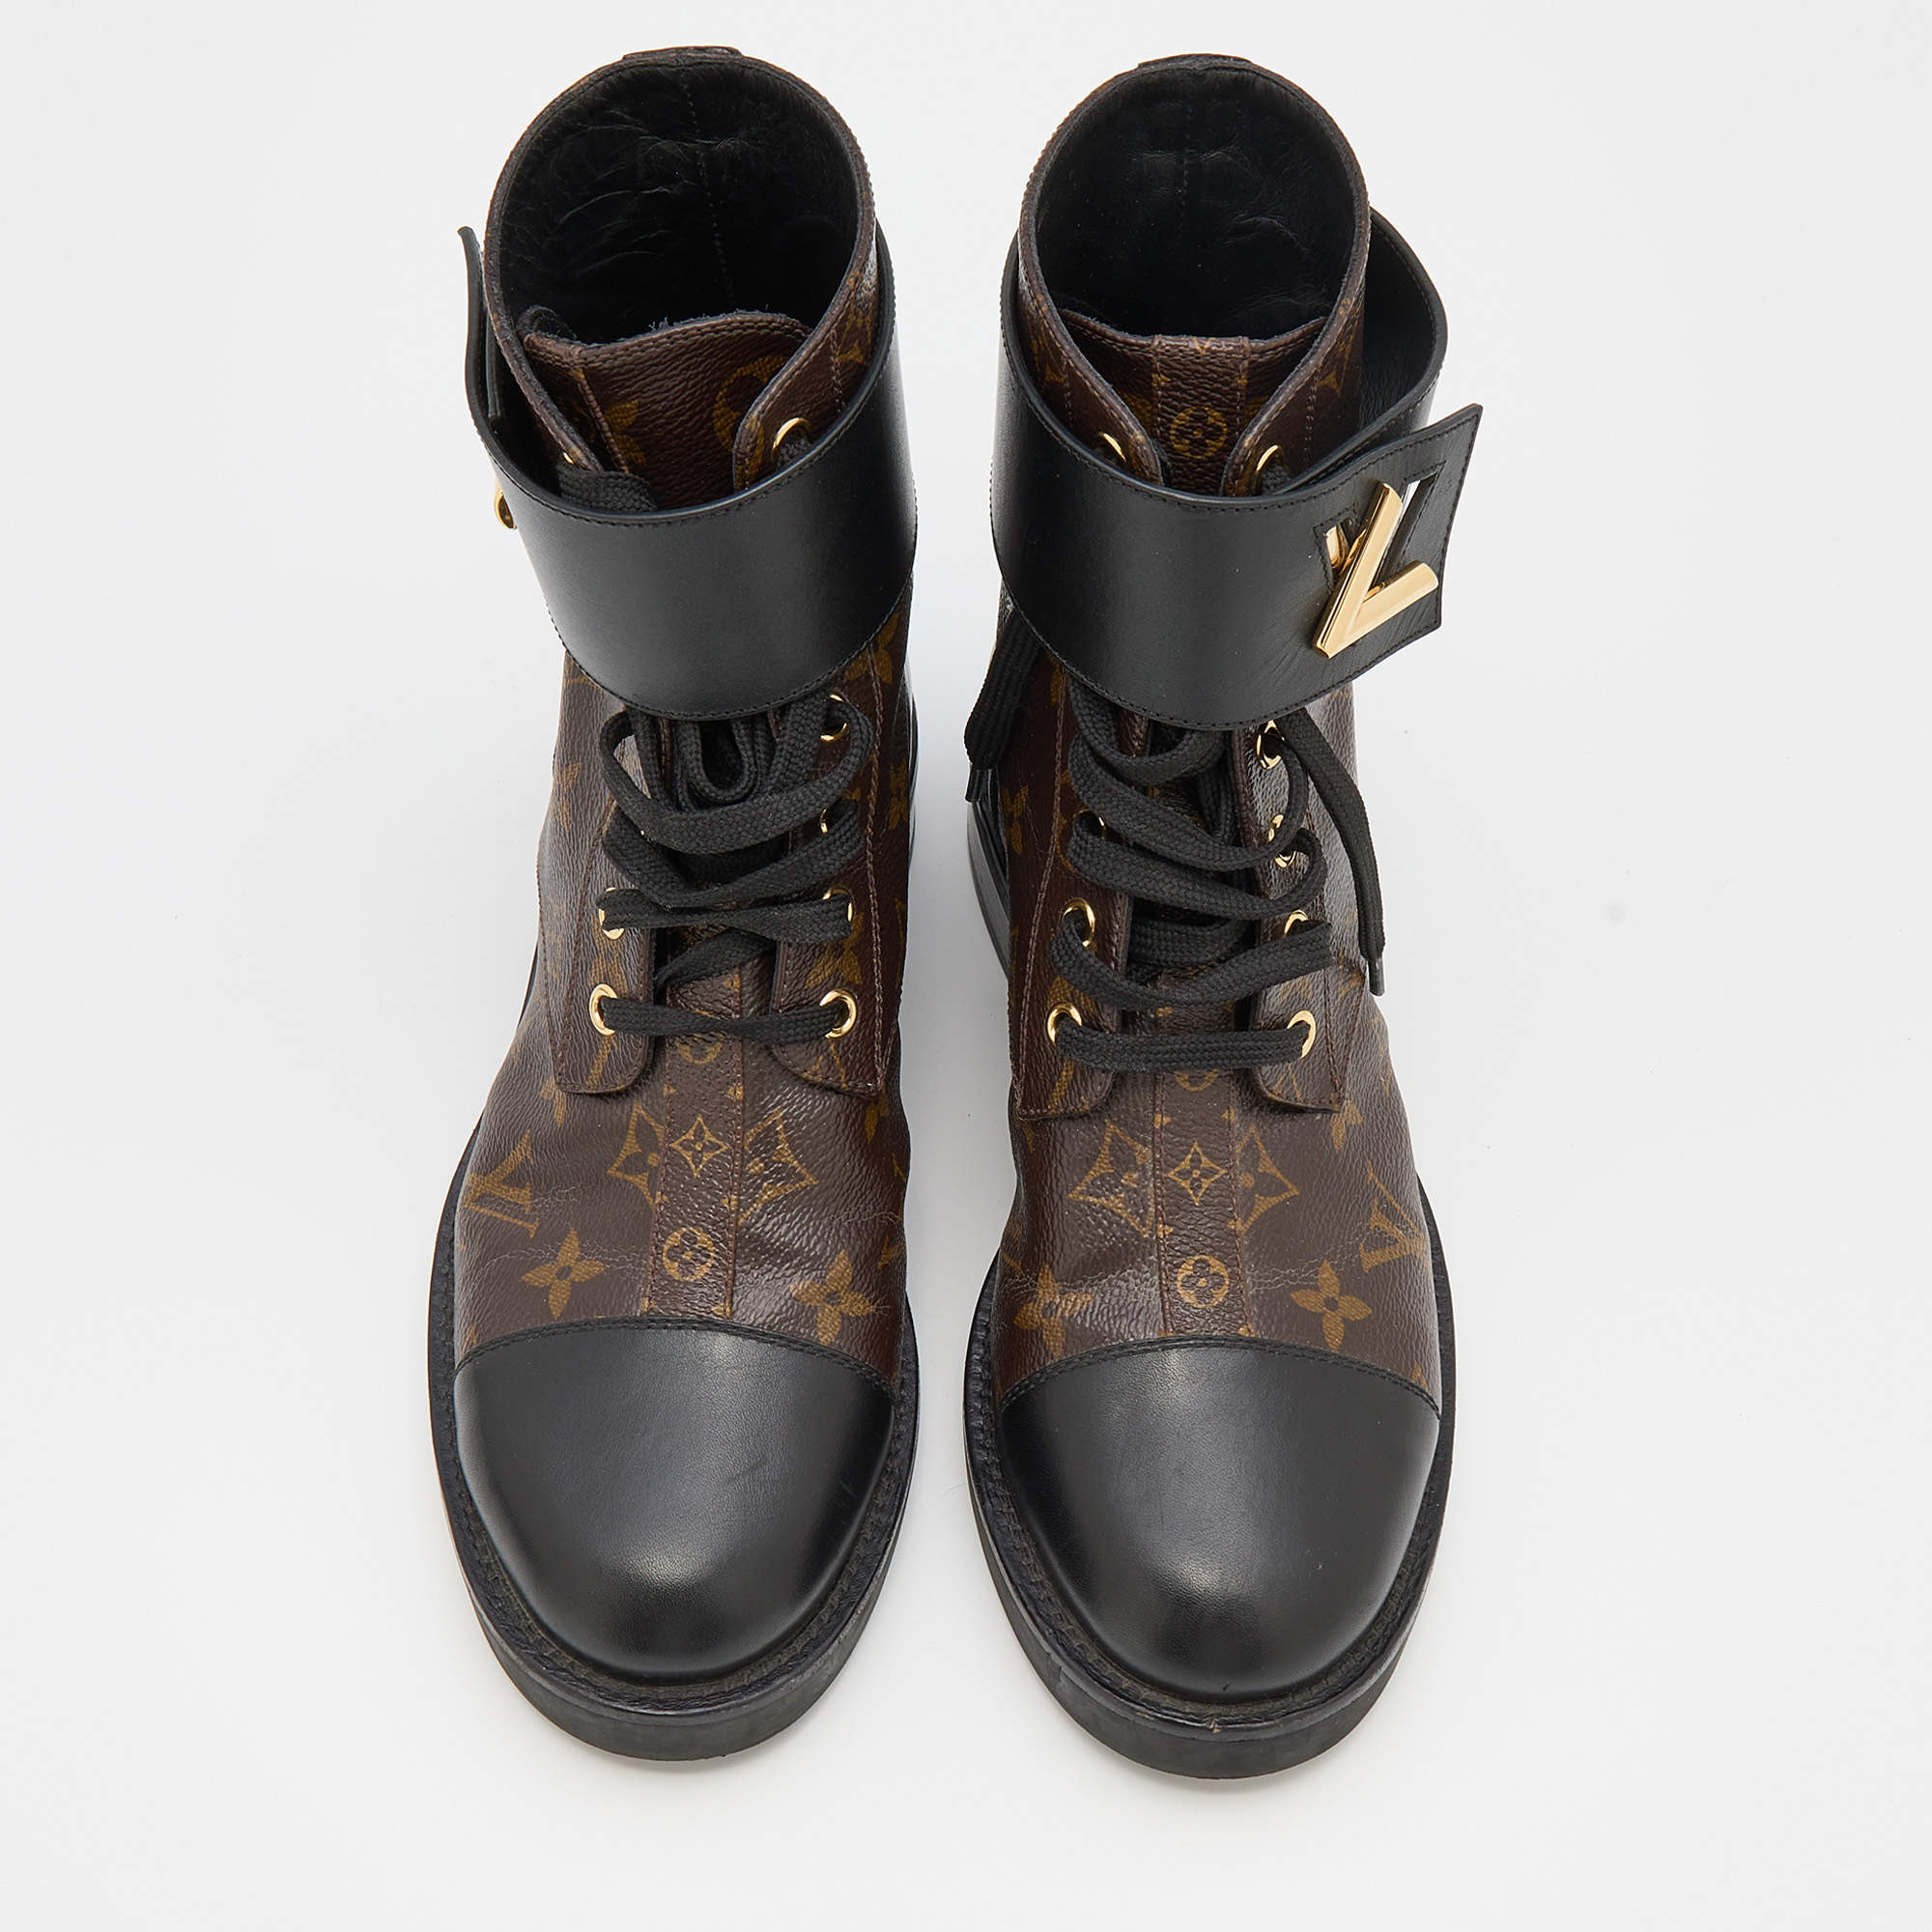 Louis Vuitton Printed Combat Boots - Black Boots, Shoes - LOU793691